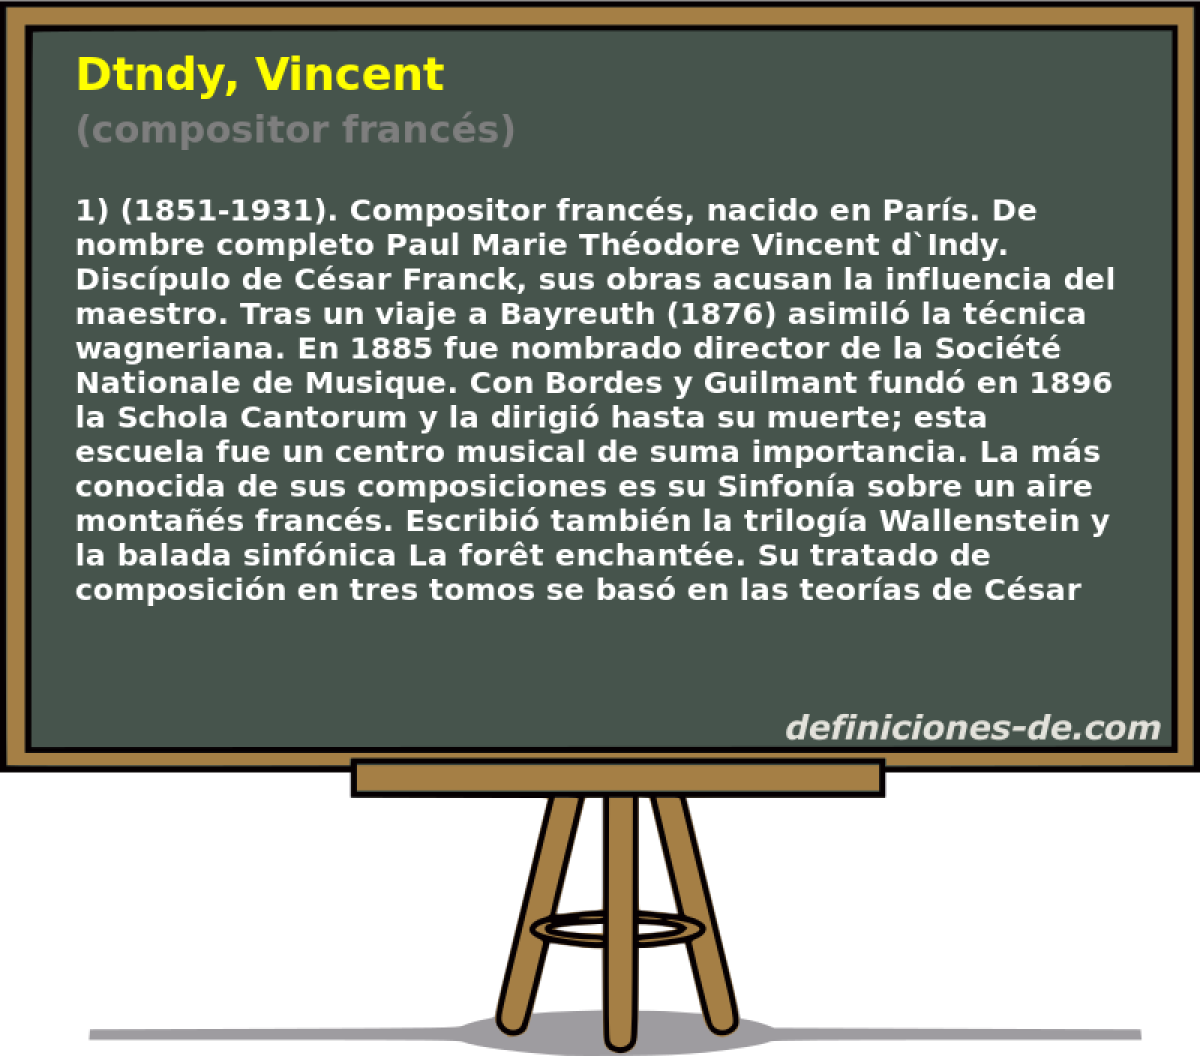 Dtndy, Vincent (compositor francs)